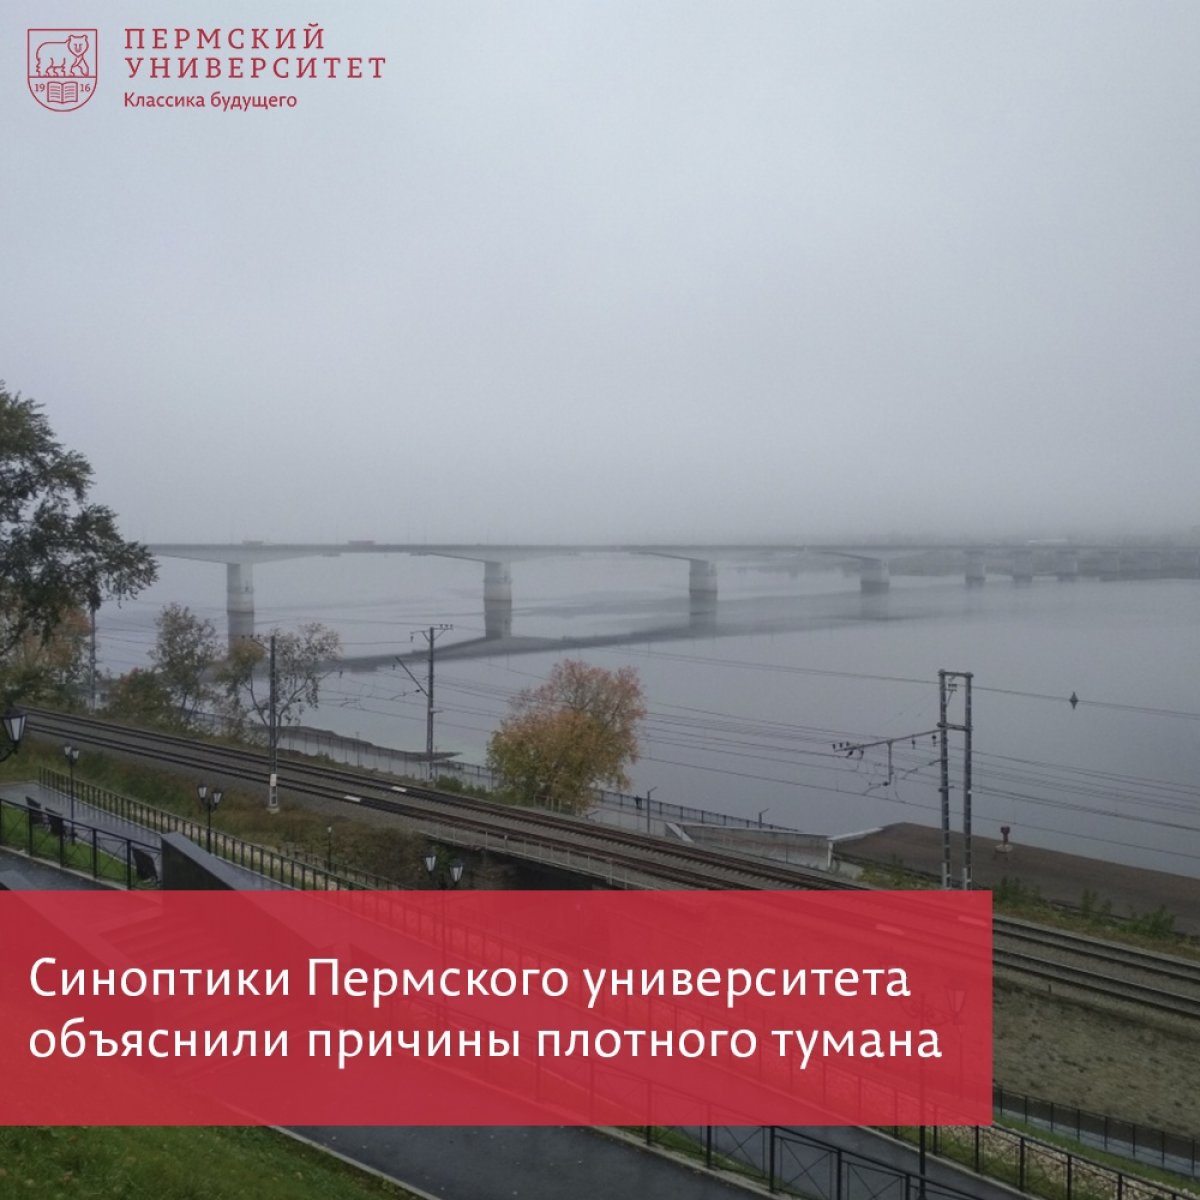 ГИС-центр ПГНИУ рассказал о причинах тумана в Перми